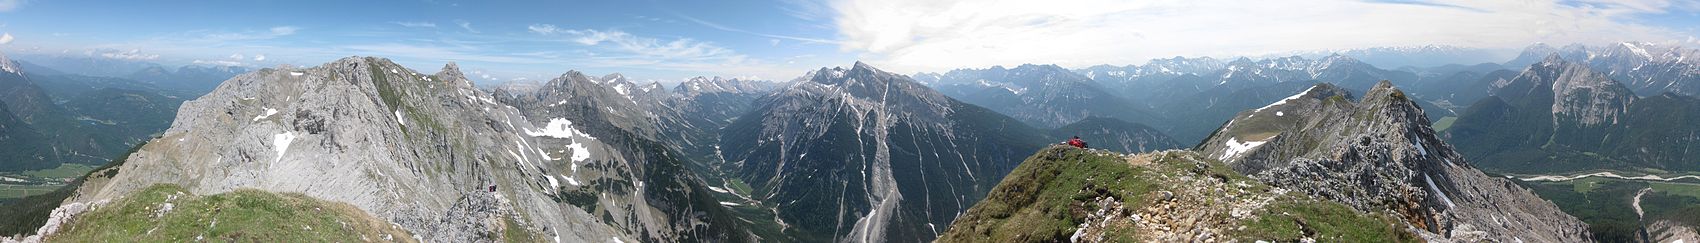 Karwendel: Mittenwalder Höhenweg. 360°-Panorama von der Sulzleklammspitze (2323 m). Von links nach rechts: vorderer Teil des Mittenwalder Höhenweges, Karwendelbachtal, Pleisenspitze (2567 m; Bildmitte), Kirchlspitze (2302 m), Große Arnspitze (2196 m; Gipfel rechts hinten), Wettersteingebirge (Massiv rechts im Hintergrund).- Der Heinrich-Noe-Steig verläuft zu diesem teilweise parallel, weiter unten.